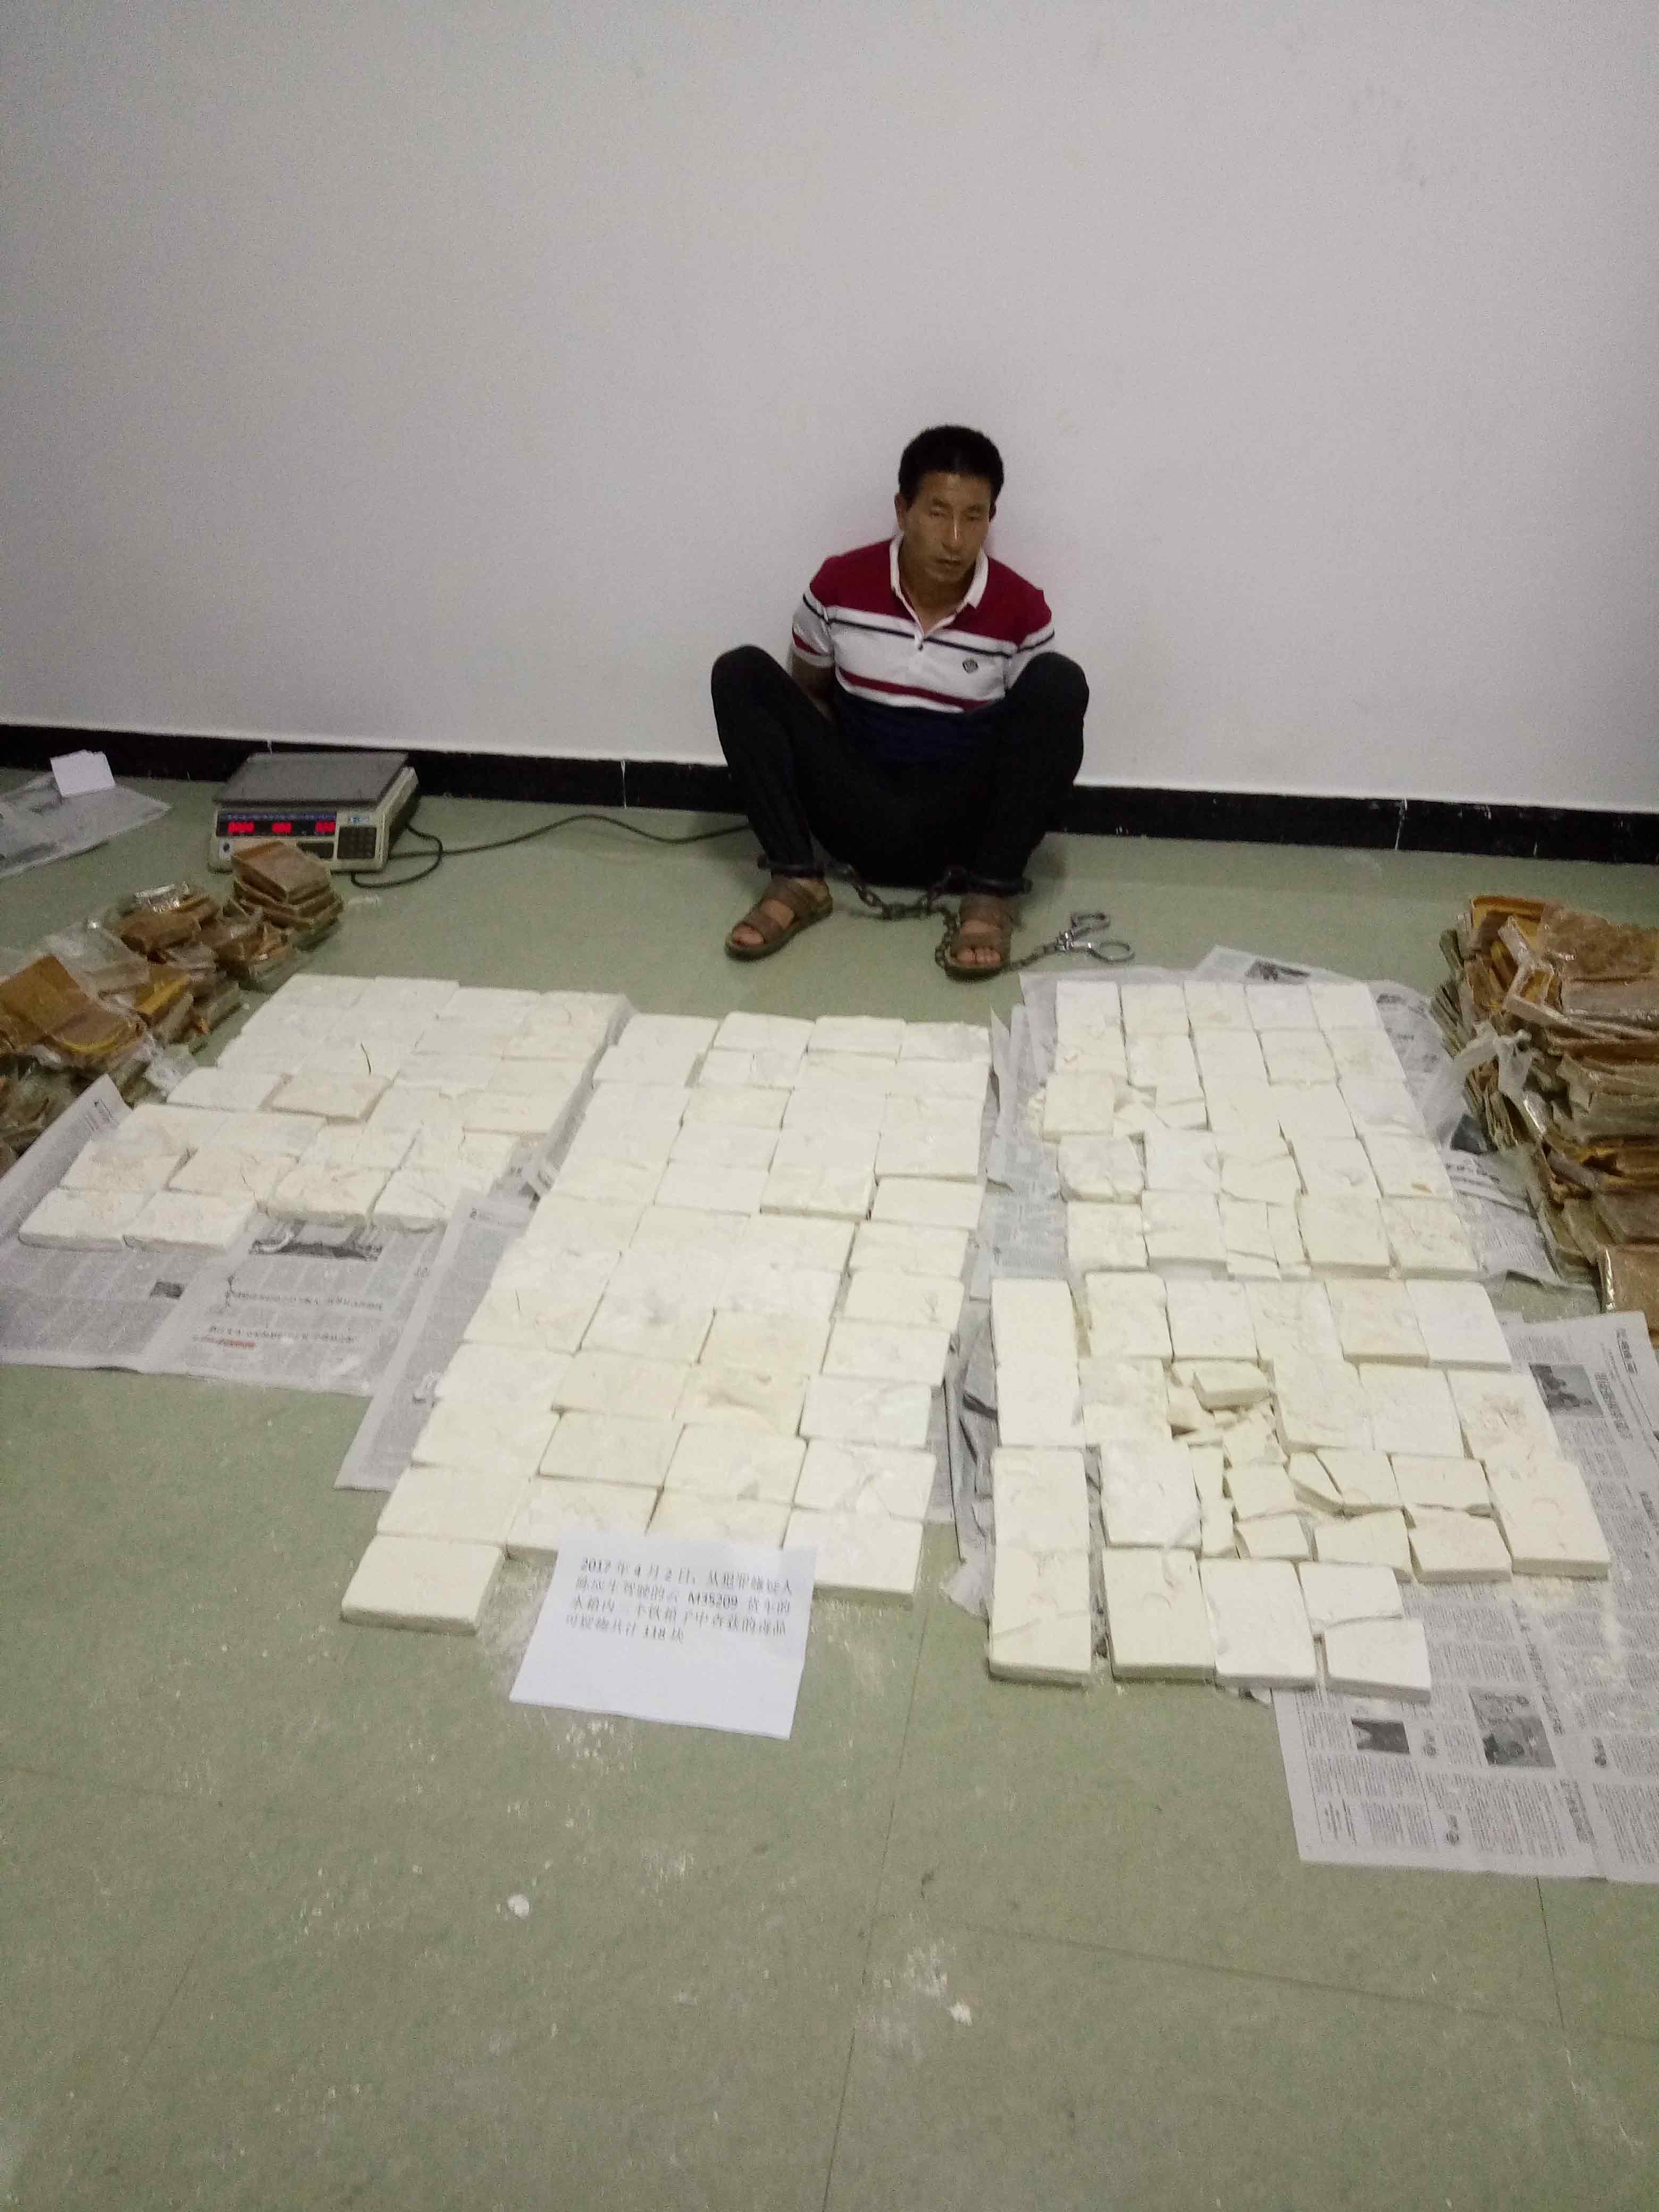 云南、重庆警方联手破获特大毒品案 查获海洛因可疑物34.8千克 - 封面新闻